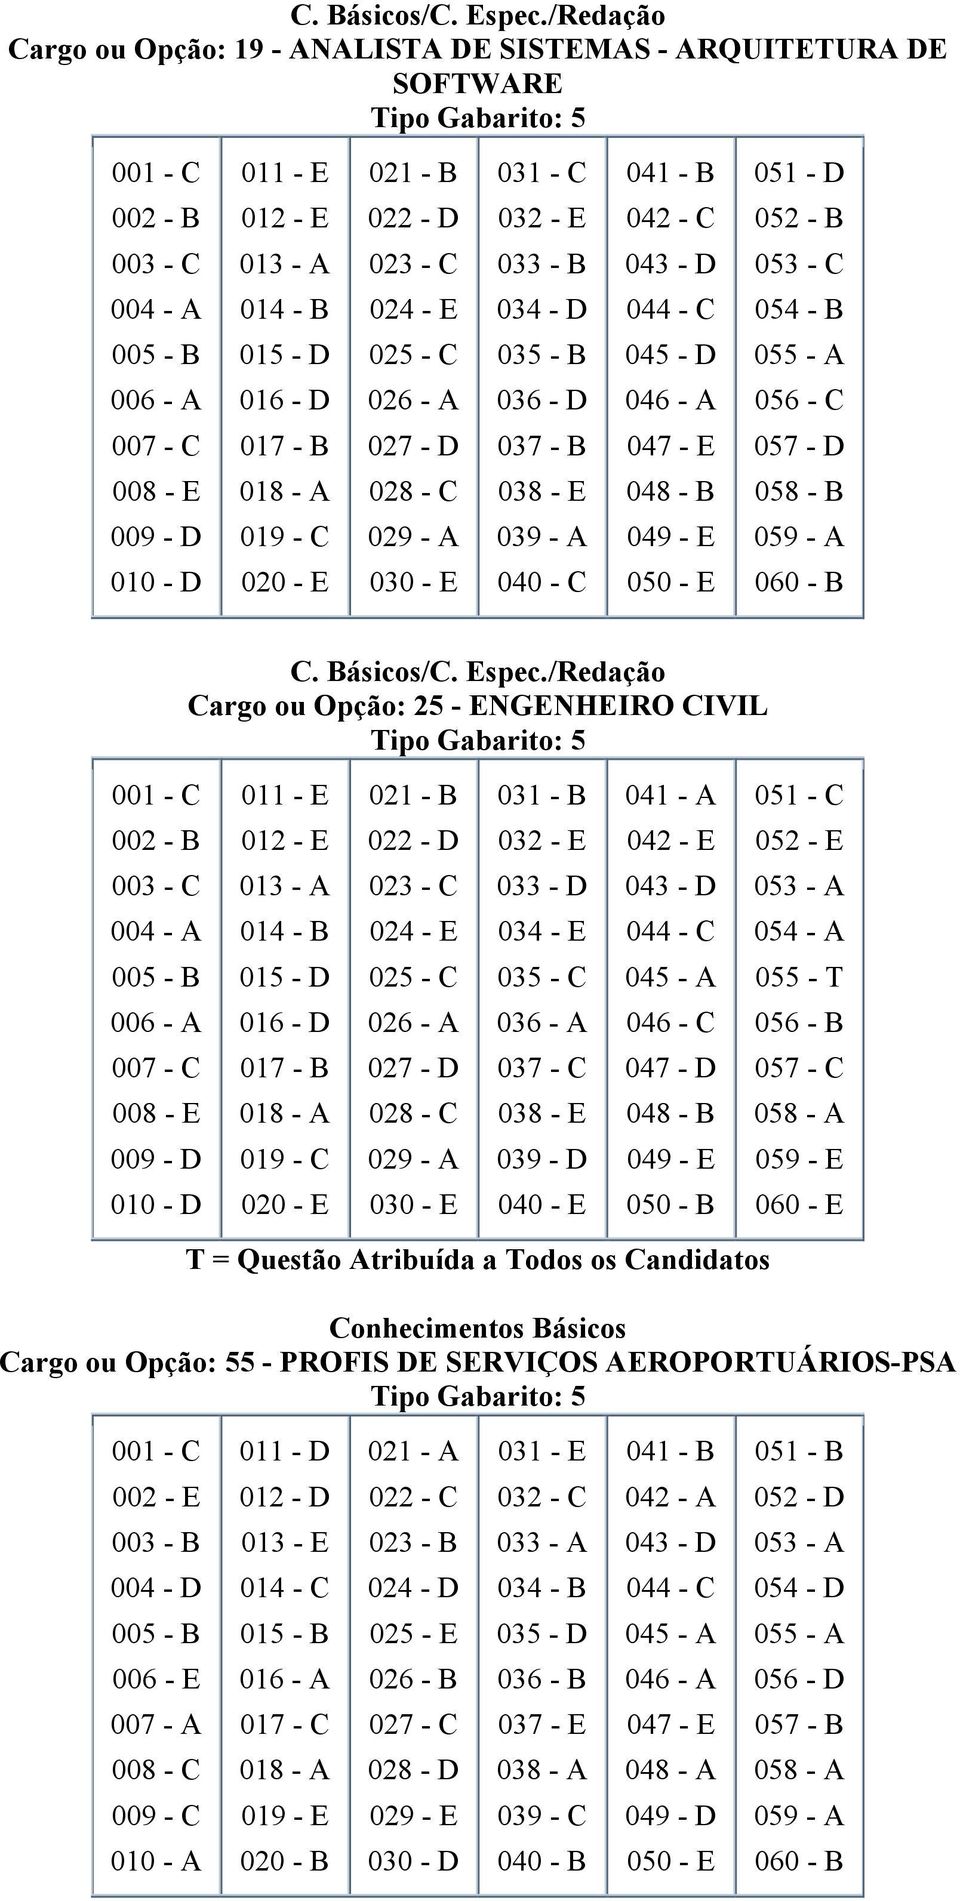 Candidatos Conhecimentos Básicos Cargo ou Opção: 55 - PROFIS DE SERVIÇOS AEROPORTUÁRIOS-PSA 021 - A 031 - E 041 - B 002 - E 003 -